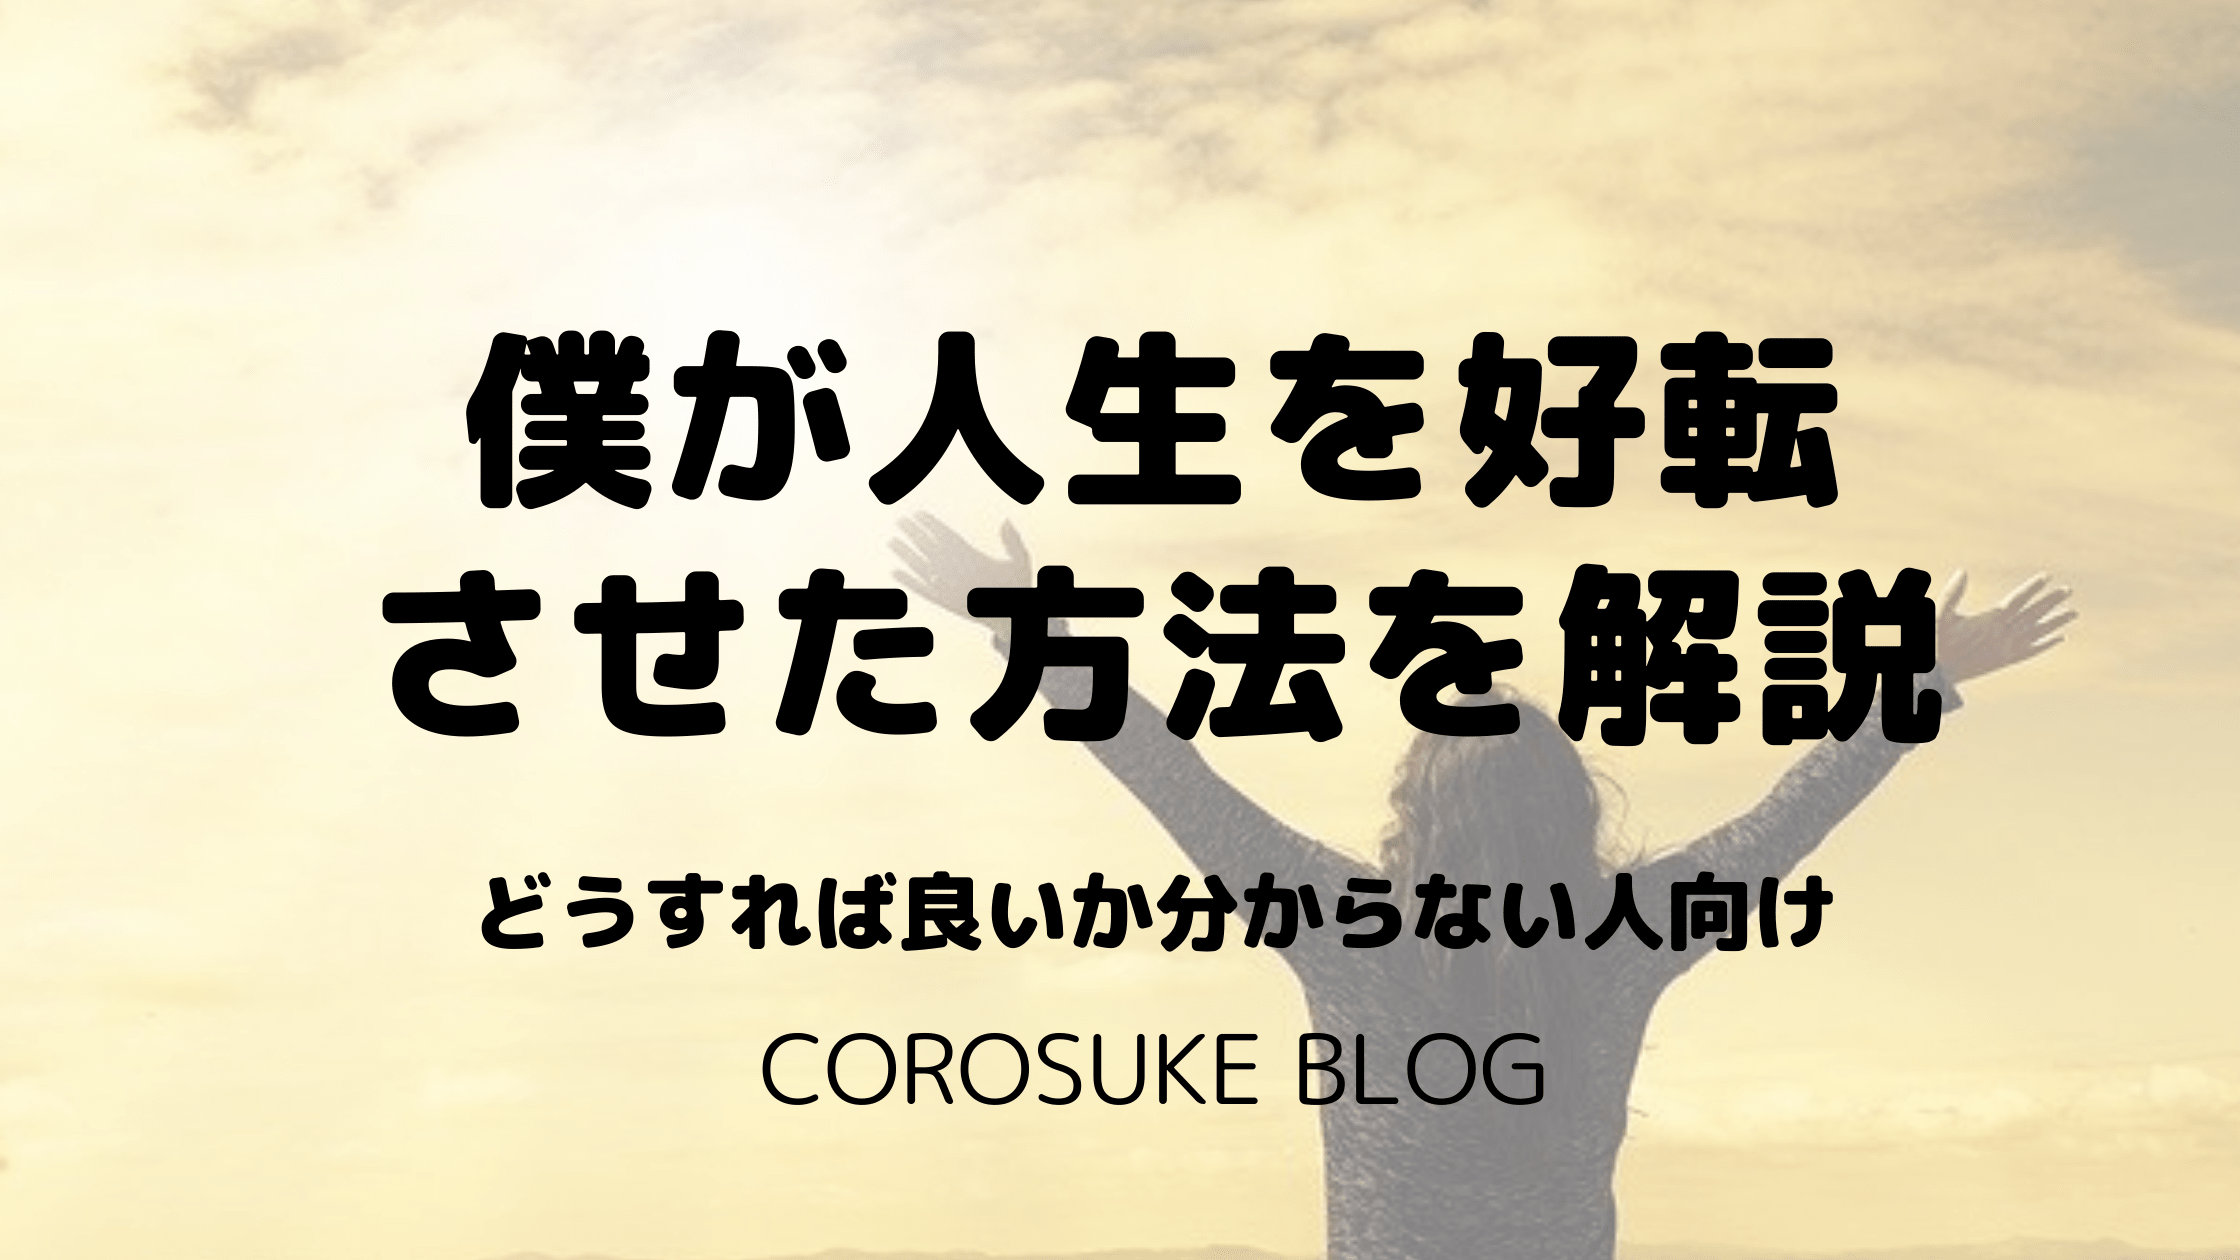 僕が人生を好転させた方法を解説 どうすれば良いか分からない人向け Corosuke Blog